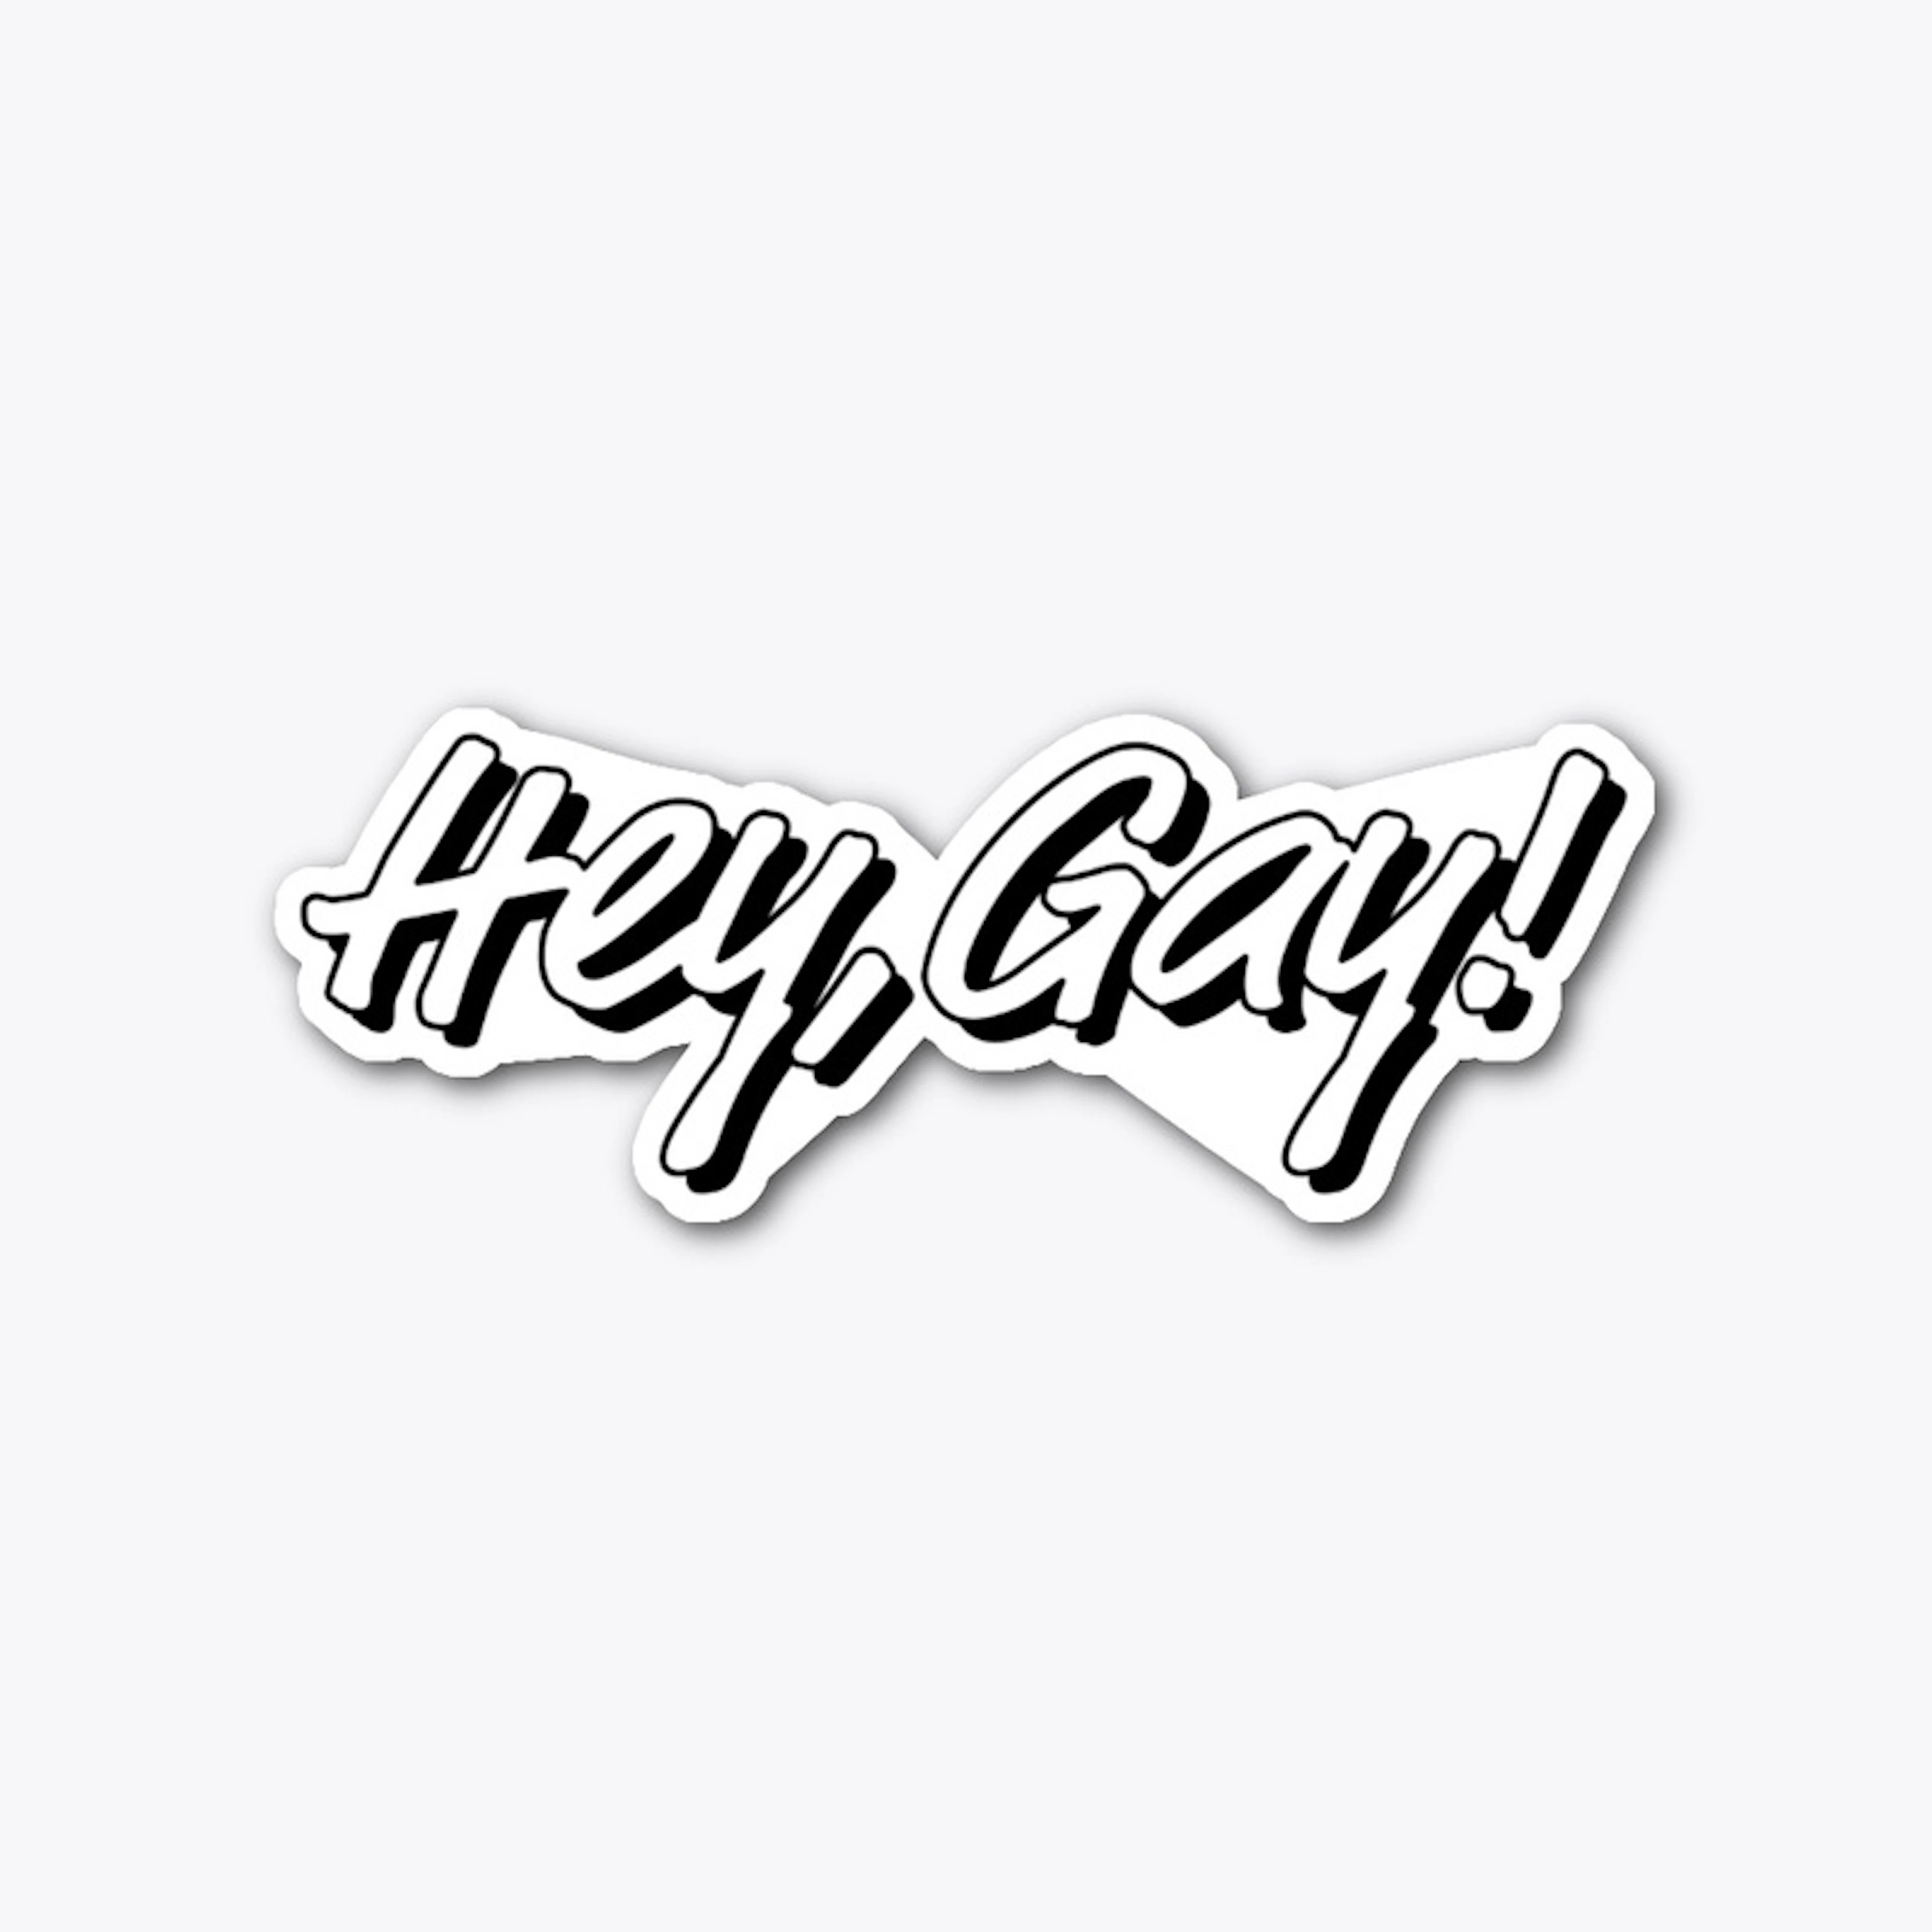 PRIDE - Hey, Gay! 